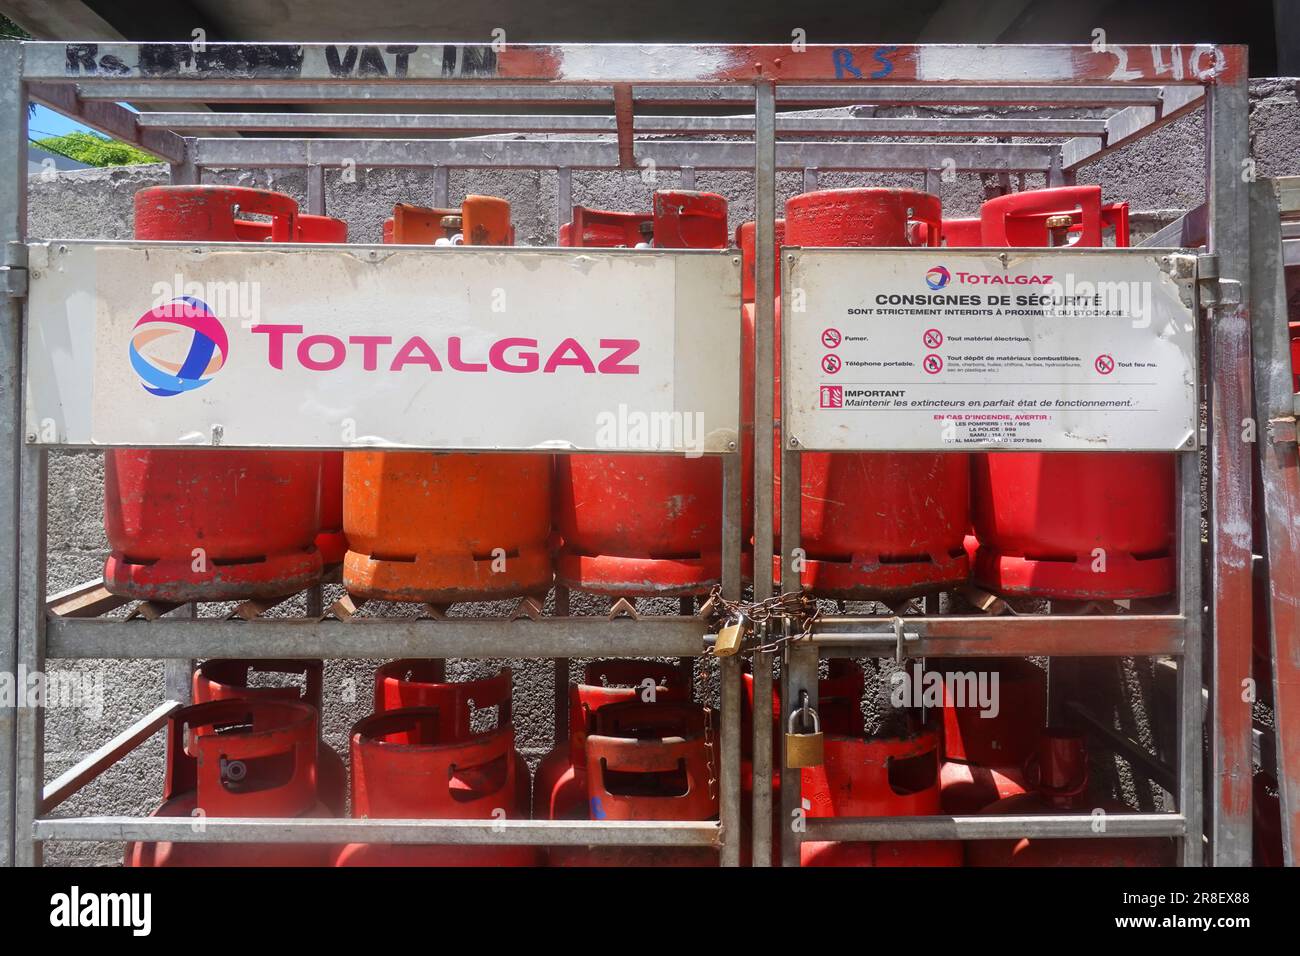 Bombole di gas Total Gaz, stazione di servizio, Mauritius Foto Stock